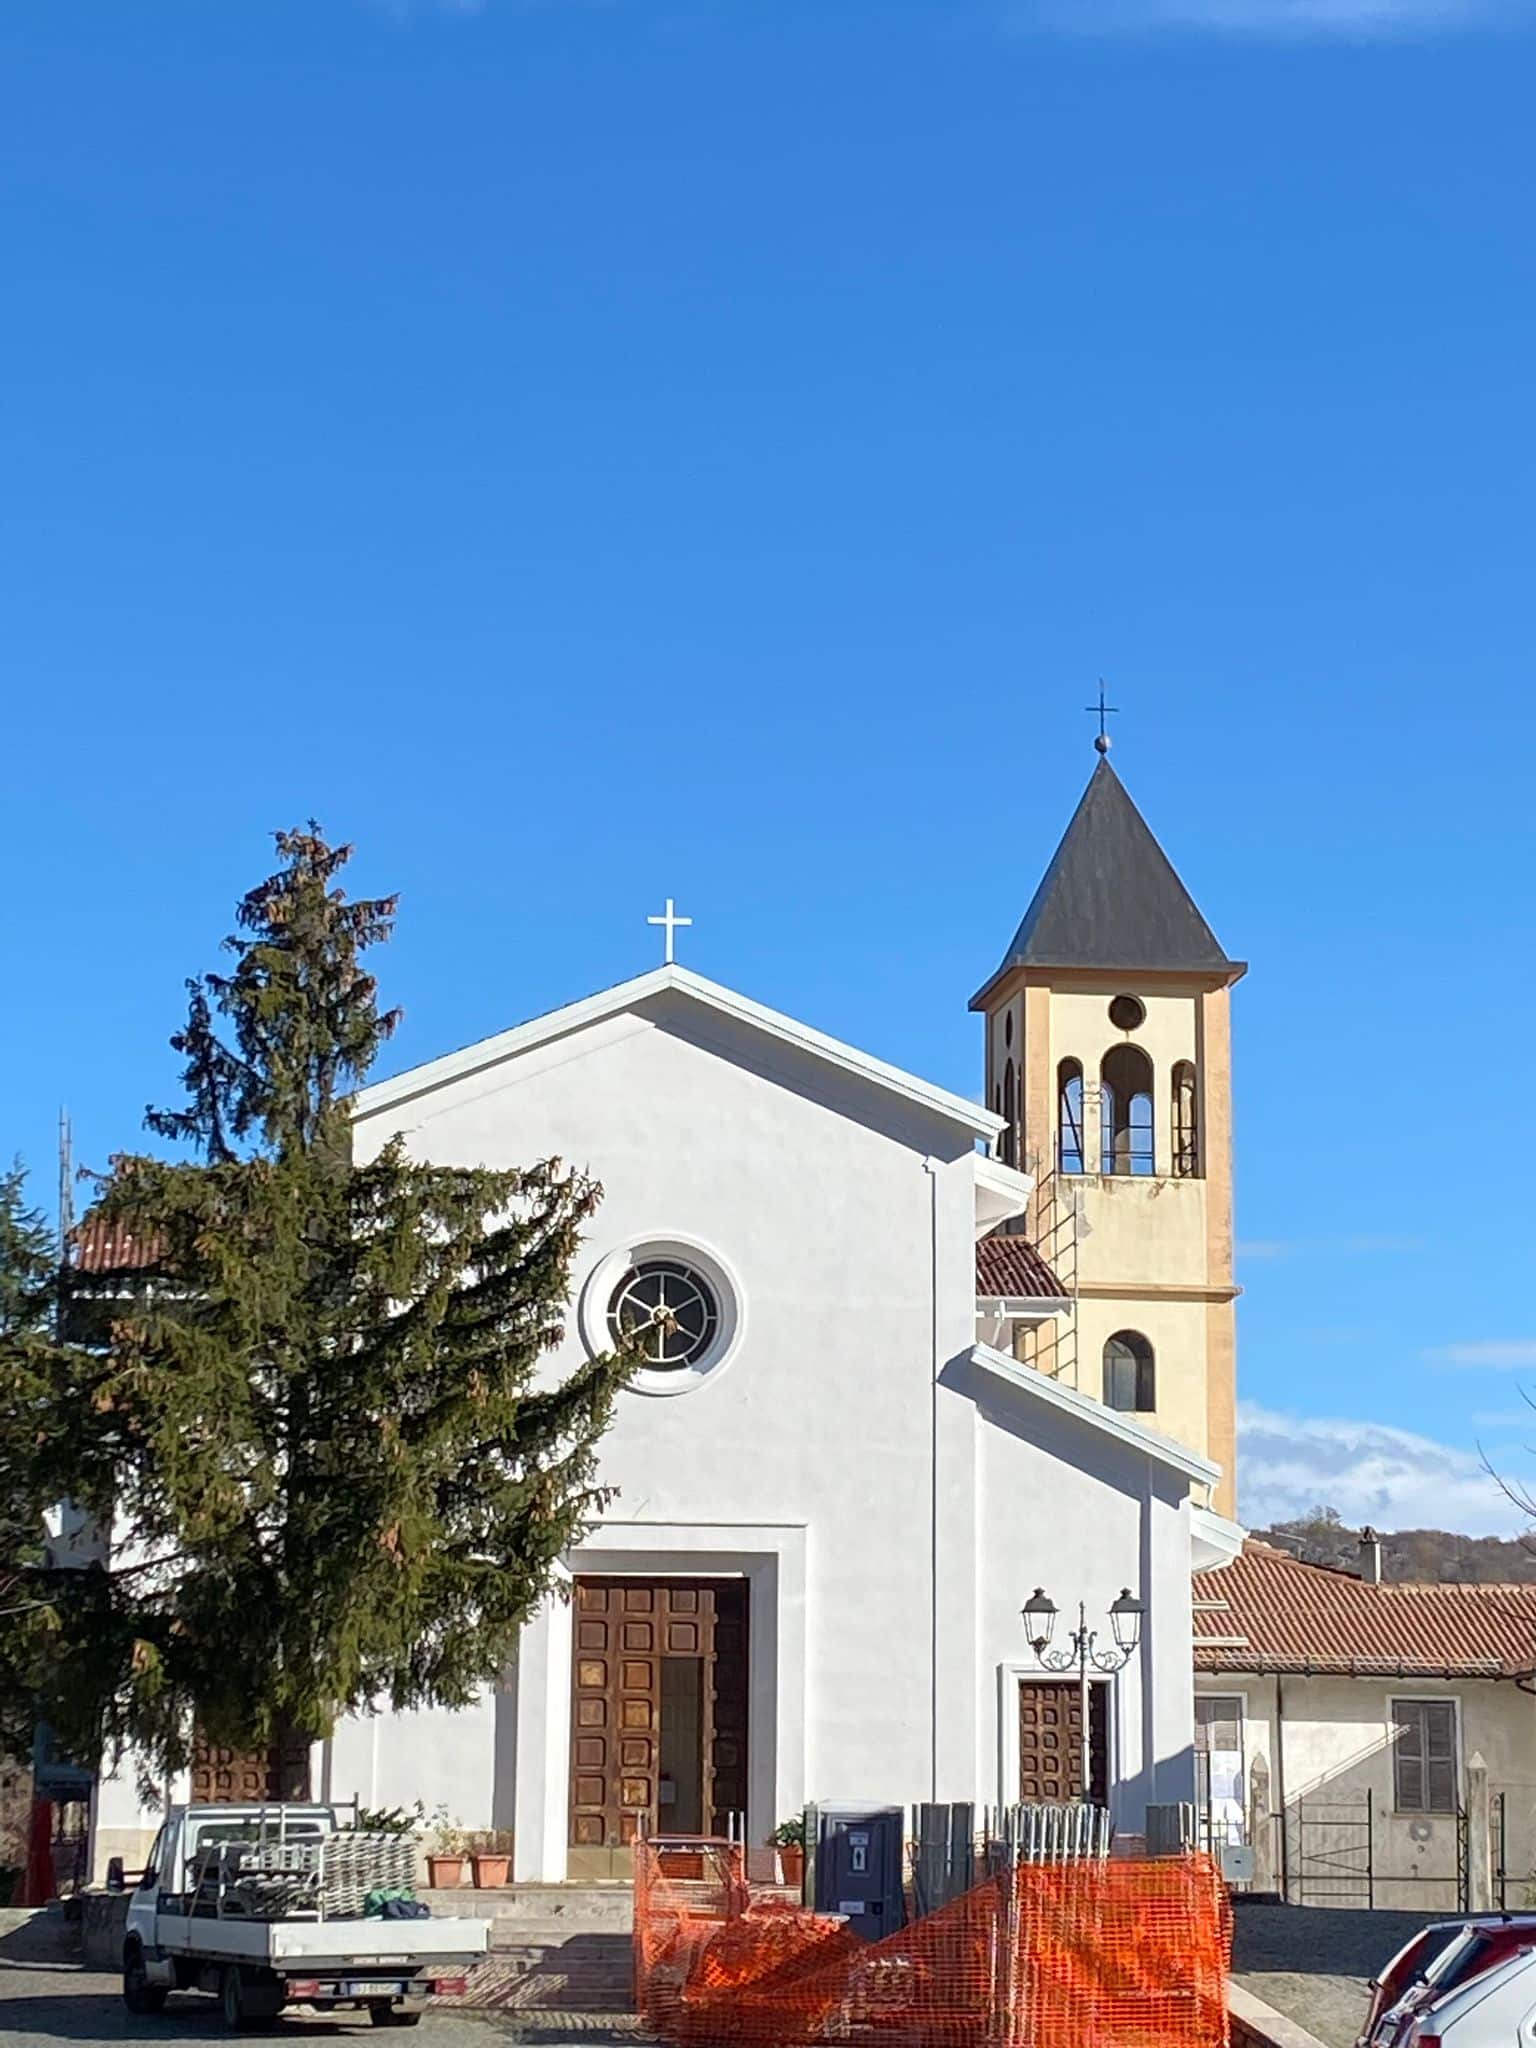 Sana laicità: stanziati 15.000 euro nel Bilancio finanziario della Regione Abruzzo 2022-2024 in favore della Chiesa Parrocchiale Sant'Egidio Abate in Verrecchie, frazione di Cappadocia